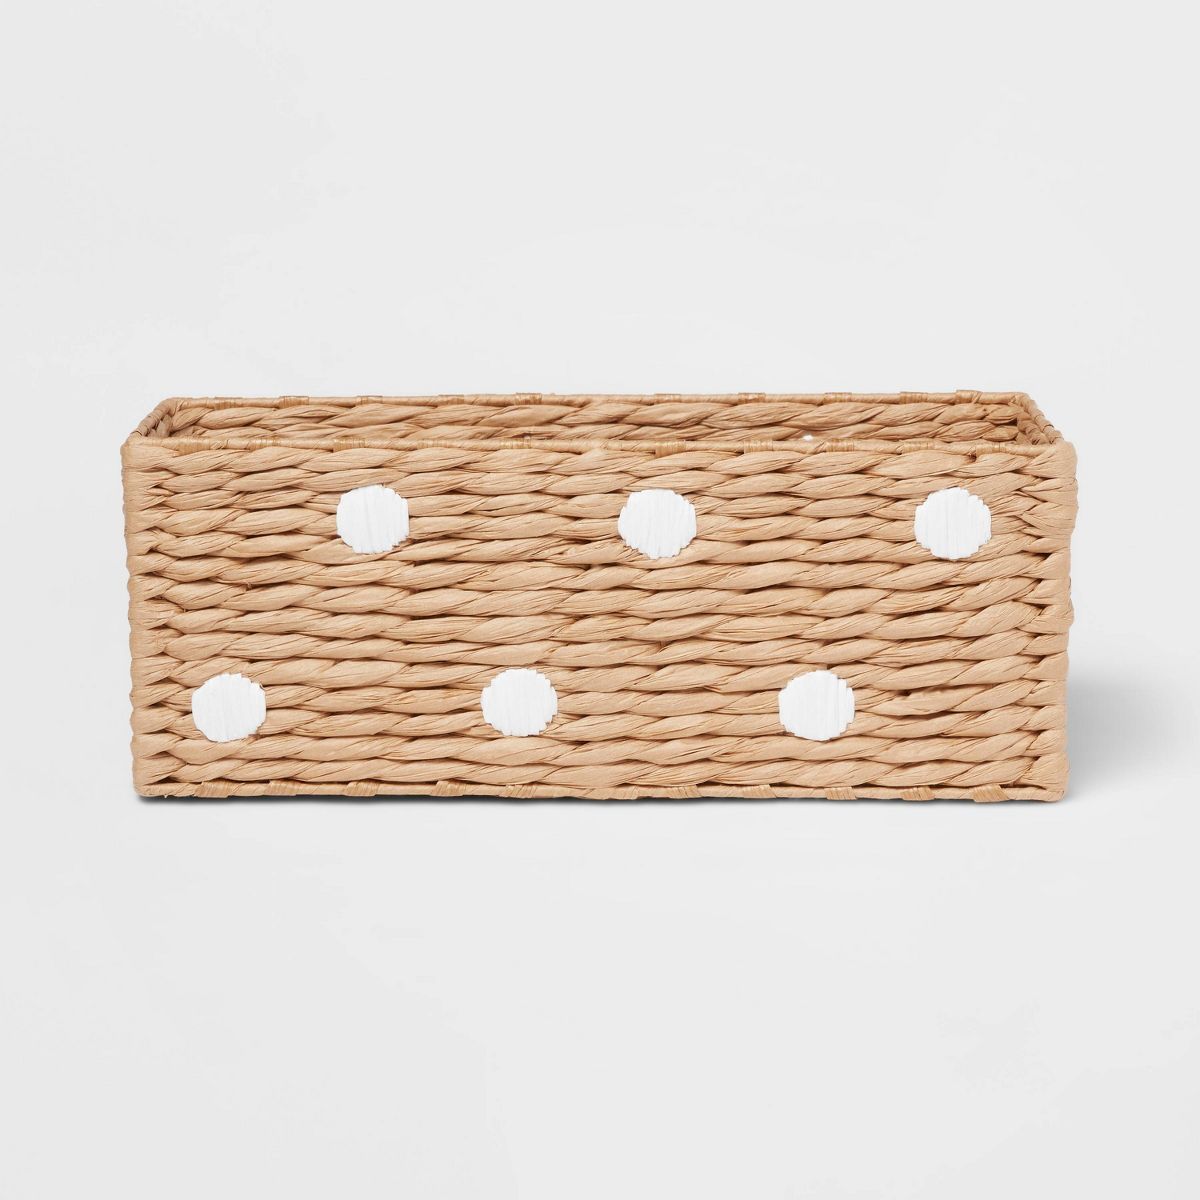 Woven Paper Dot Rectangular Kids' Basket - Pillowfort™ | Target